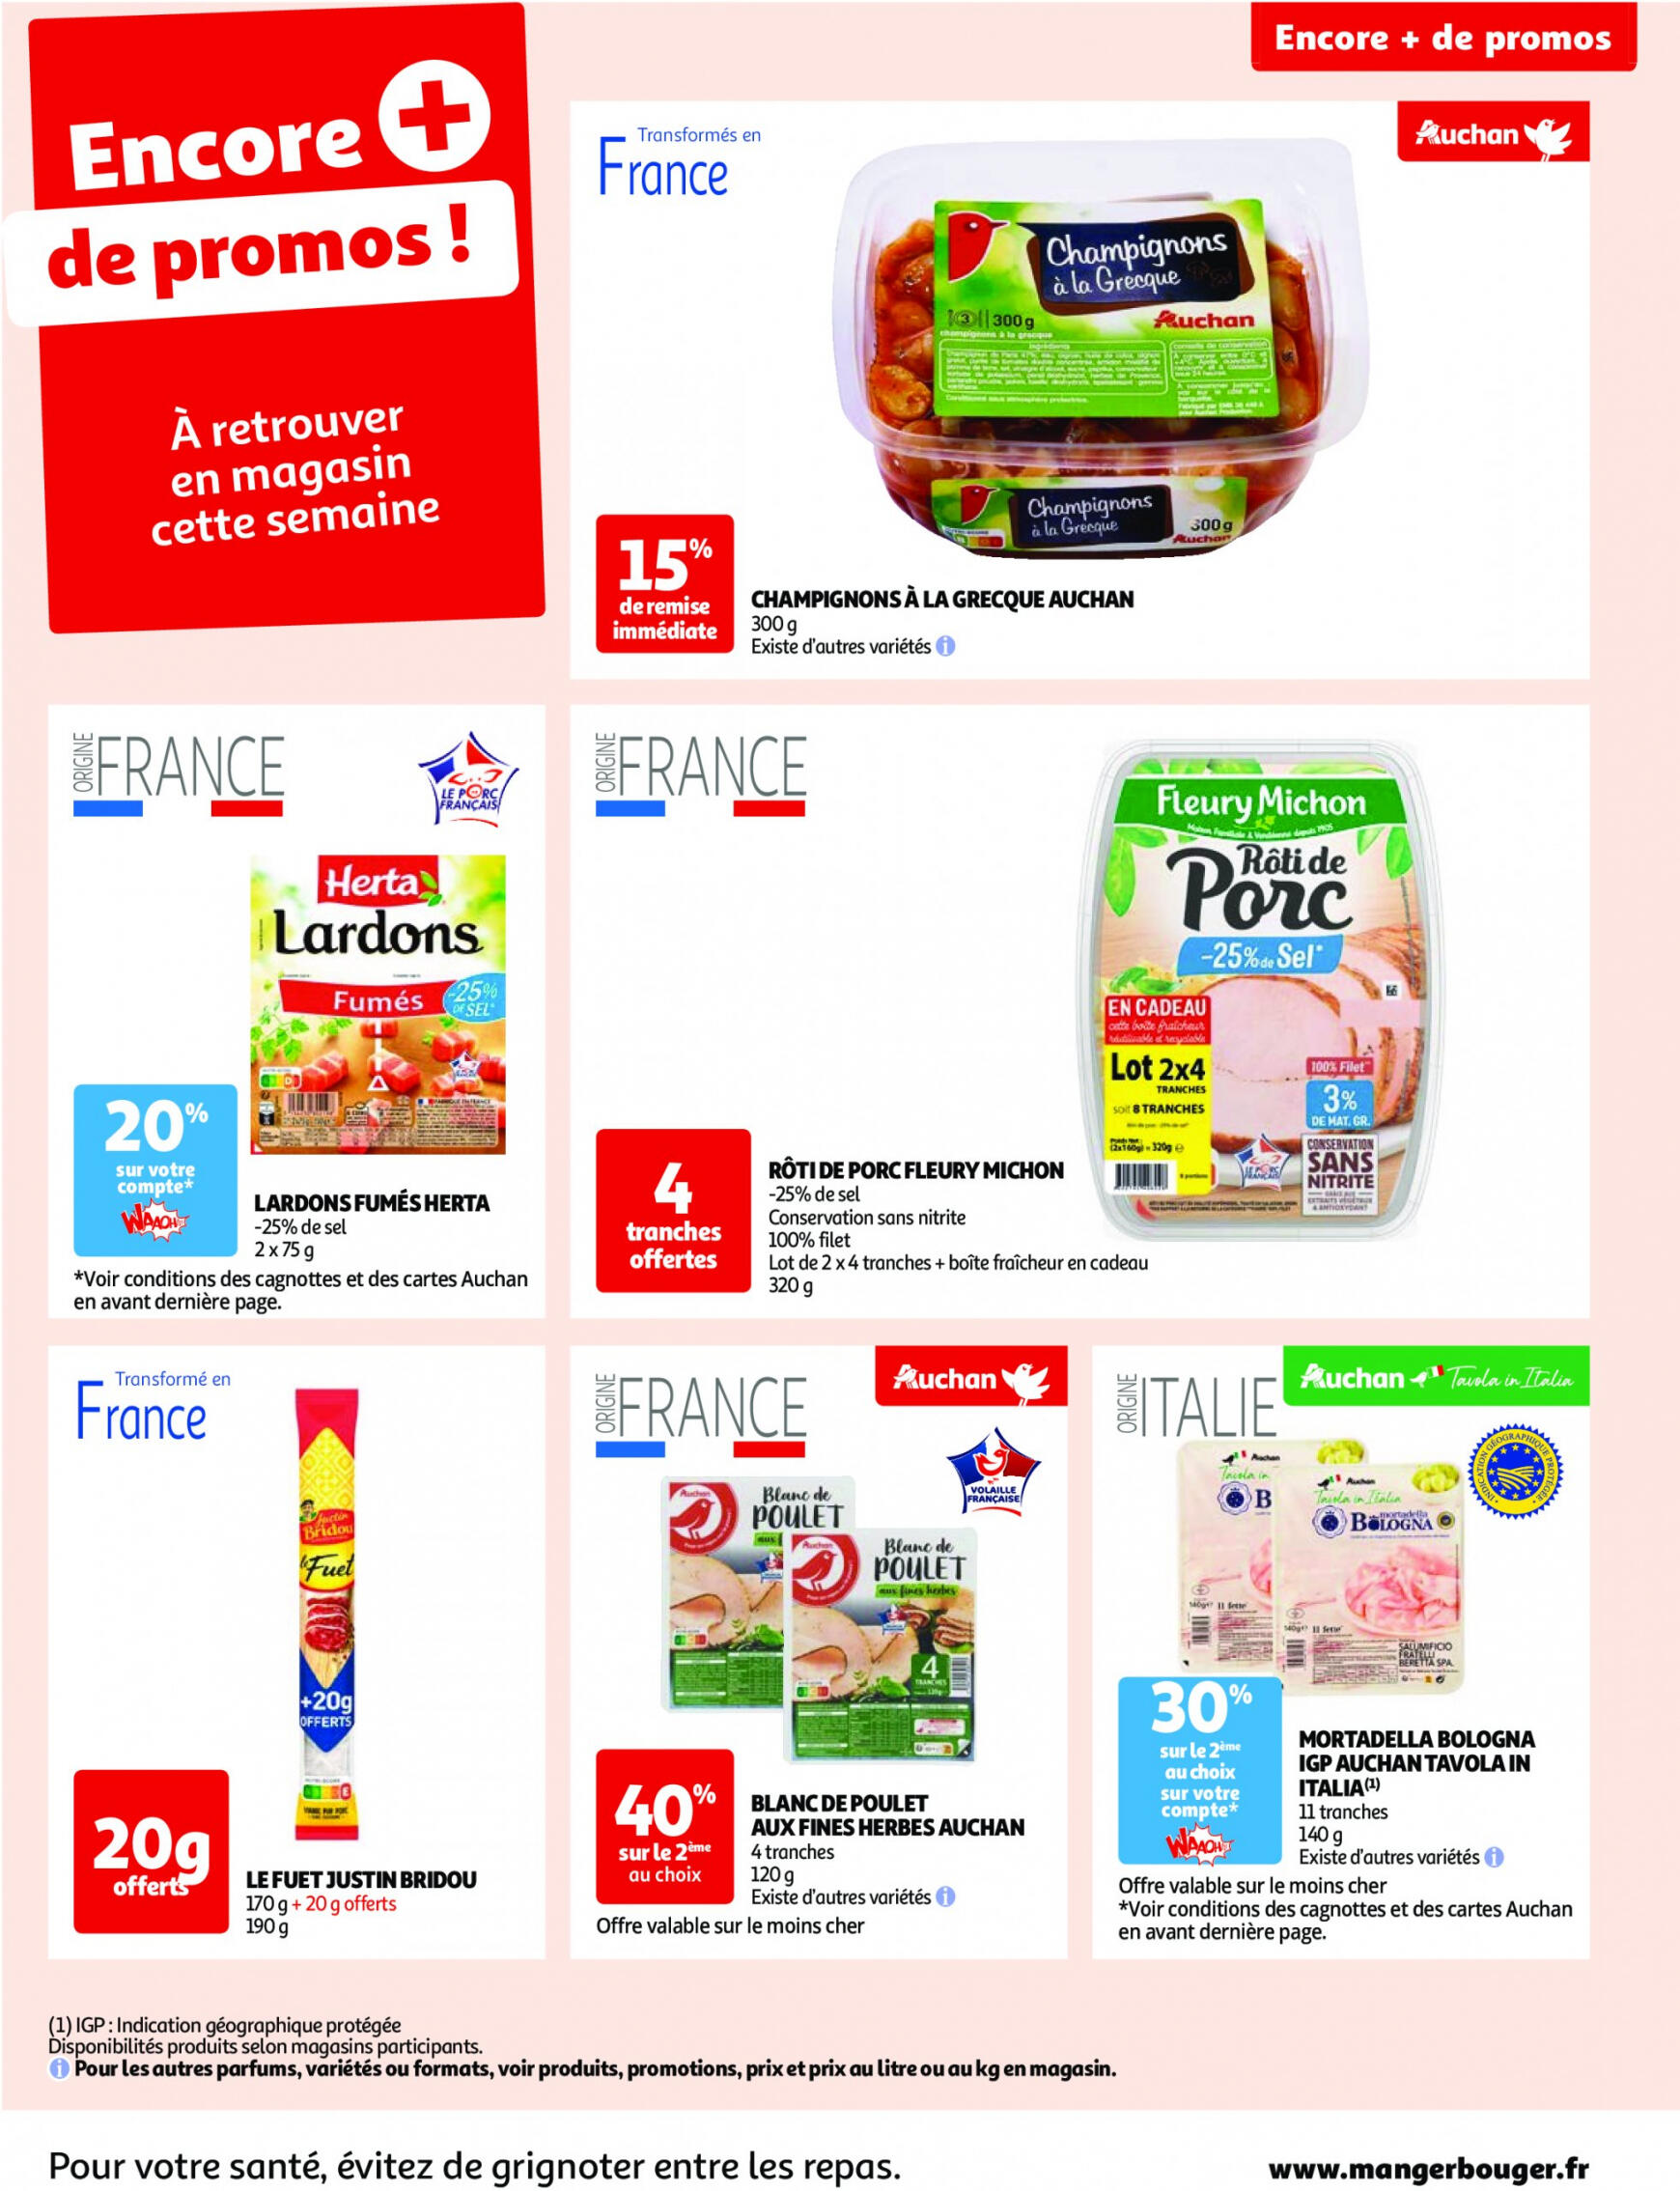 auchan - Prospectus Auchan actuel 14.05. - 21.05. - page: 55